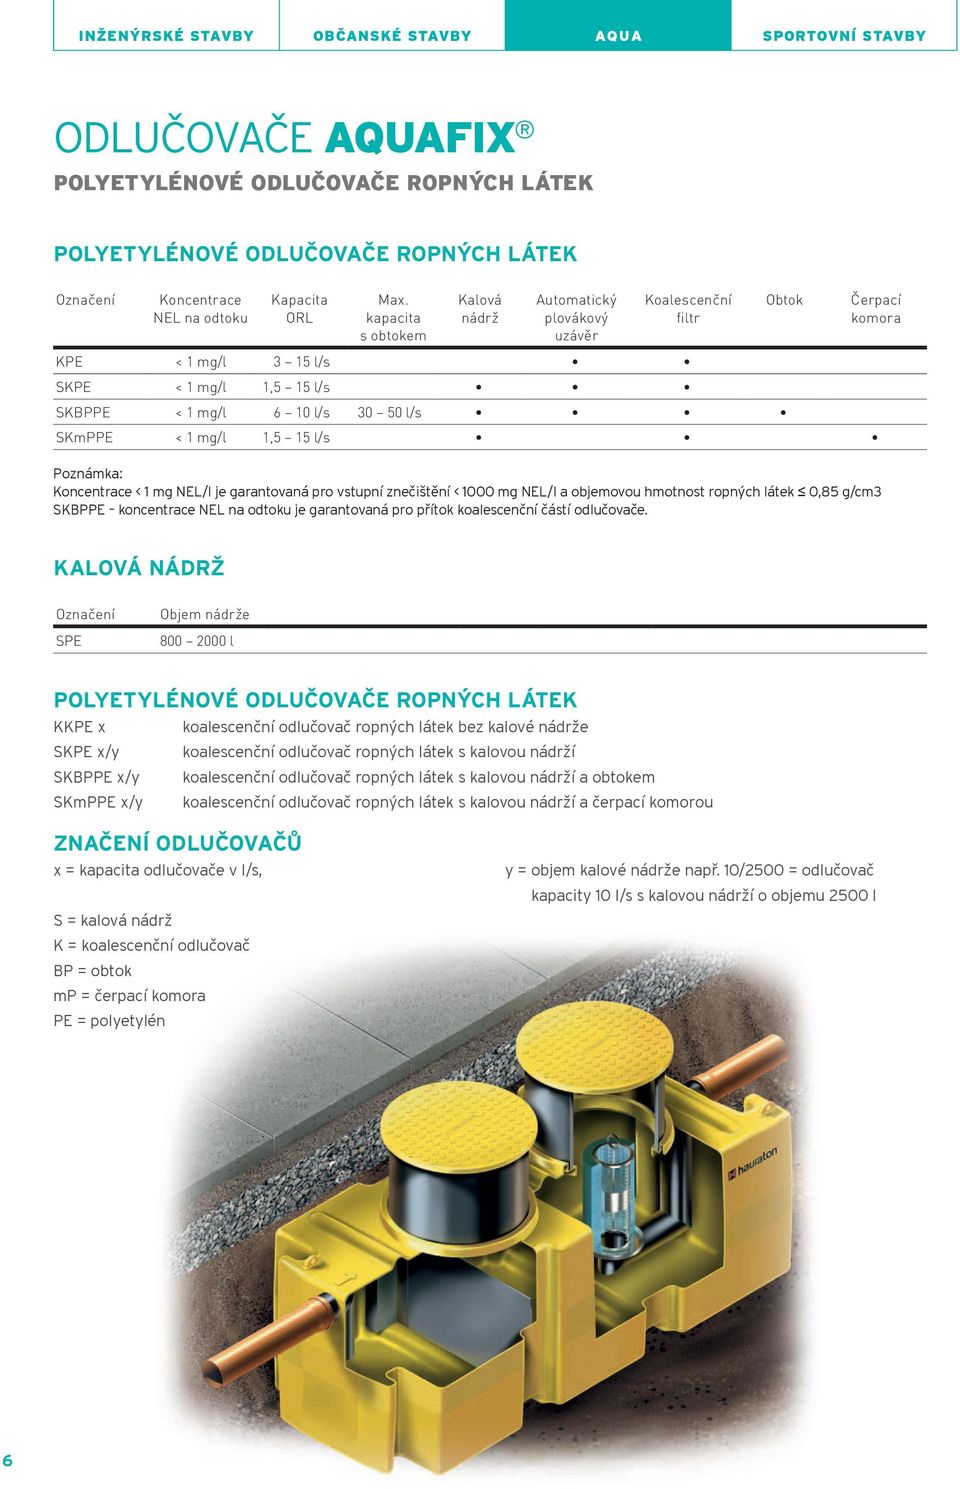 kapacita 30 50 l/s plovákový uzávěr Čerpací komora Koncentrace < 1 mg Nel/l je garantovaná pro vstupní znečištění < 1000 mg Nel/l a objemovou hmotnost ropných látek 0,85 g/cm3 SKBPPe koncentrace Nel